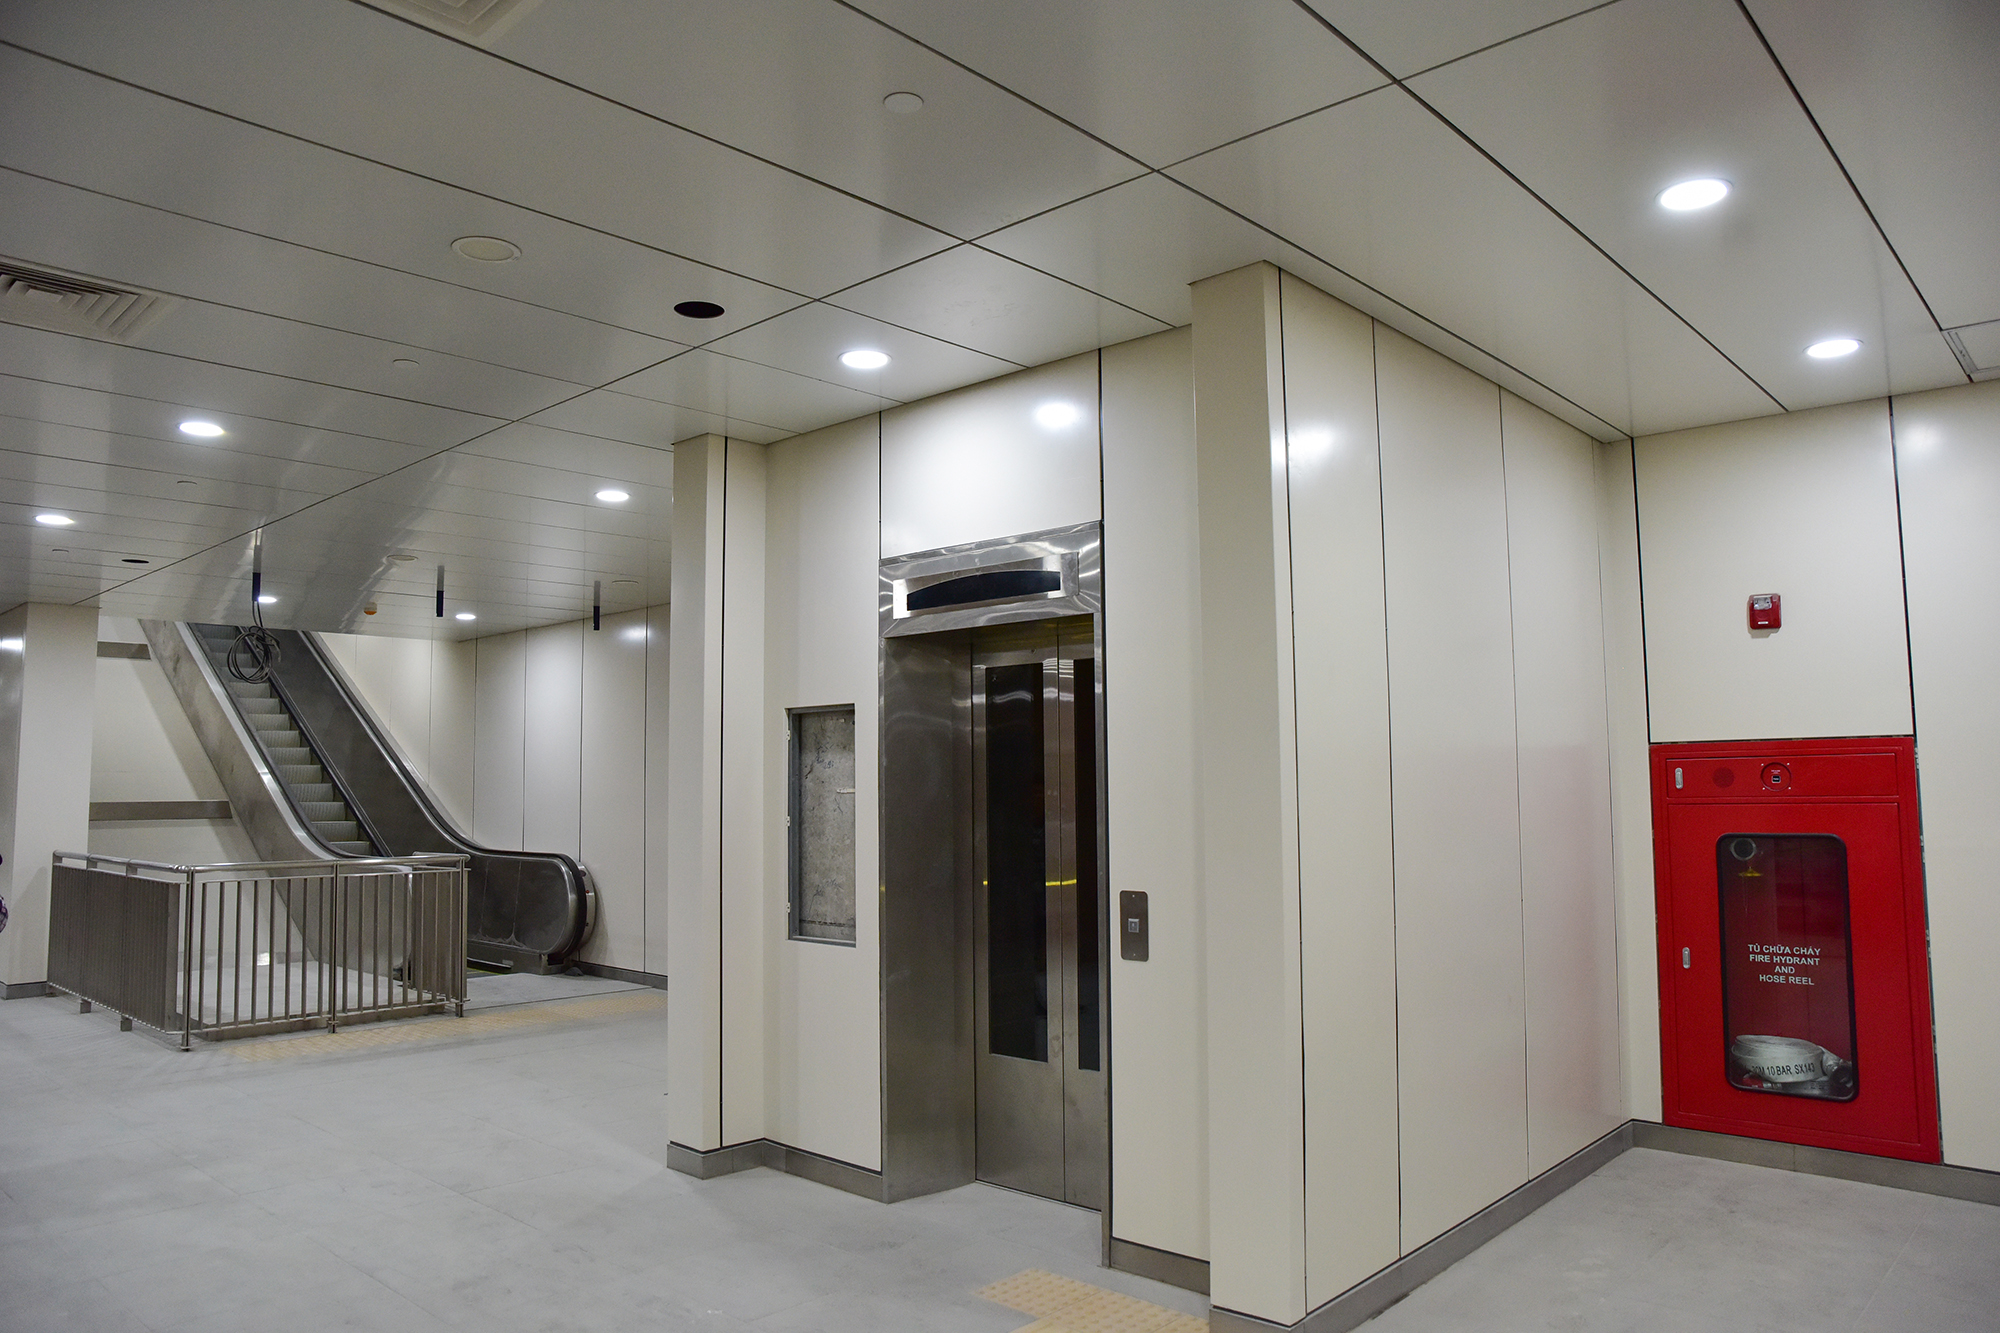 Diện mạo mới của ga ngầm metro TP.HCM sắp hoàn thiện - 10